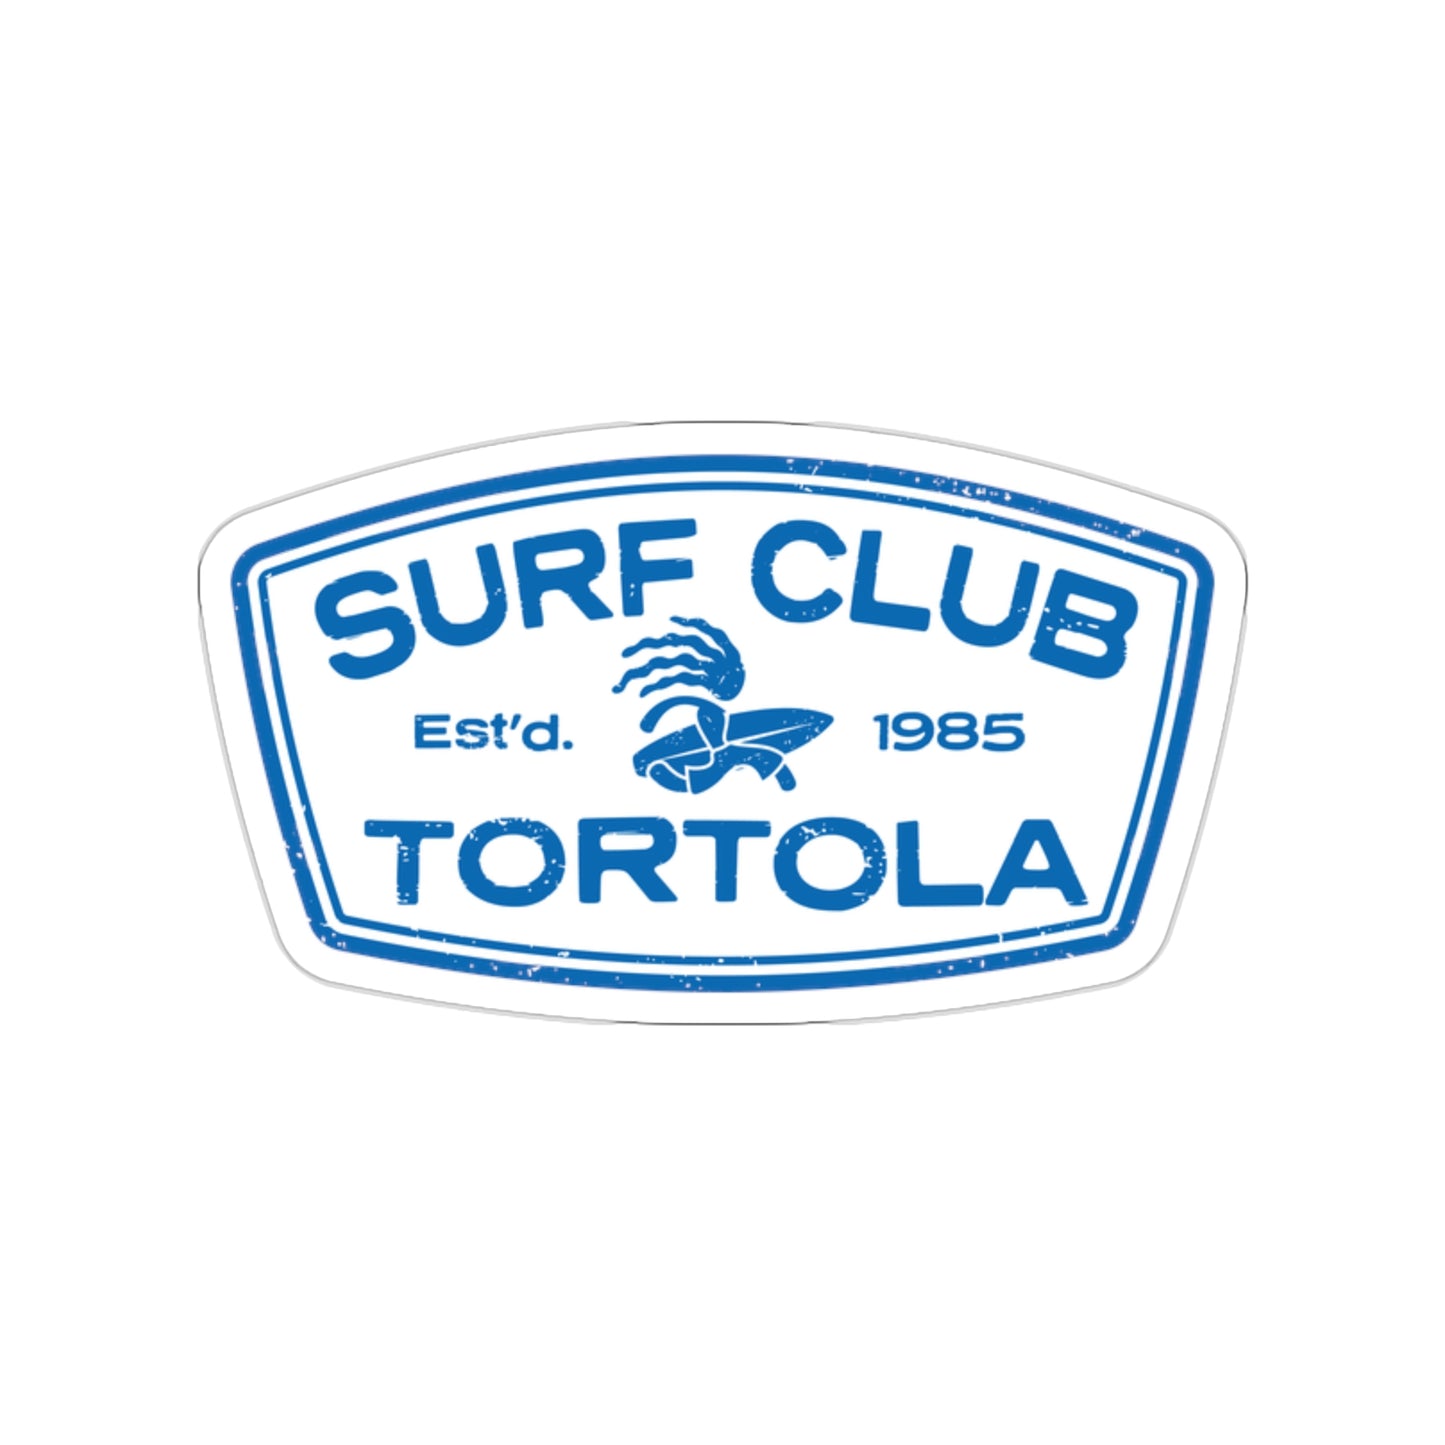 “Surf Club Tortola" Die-Cut Sticker